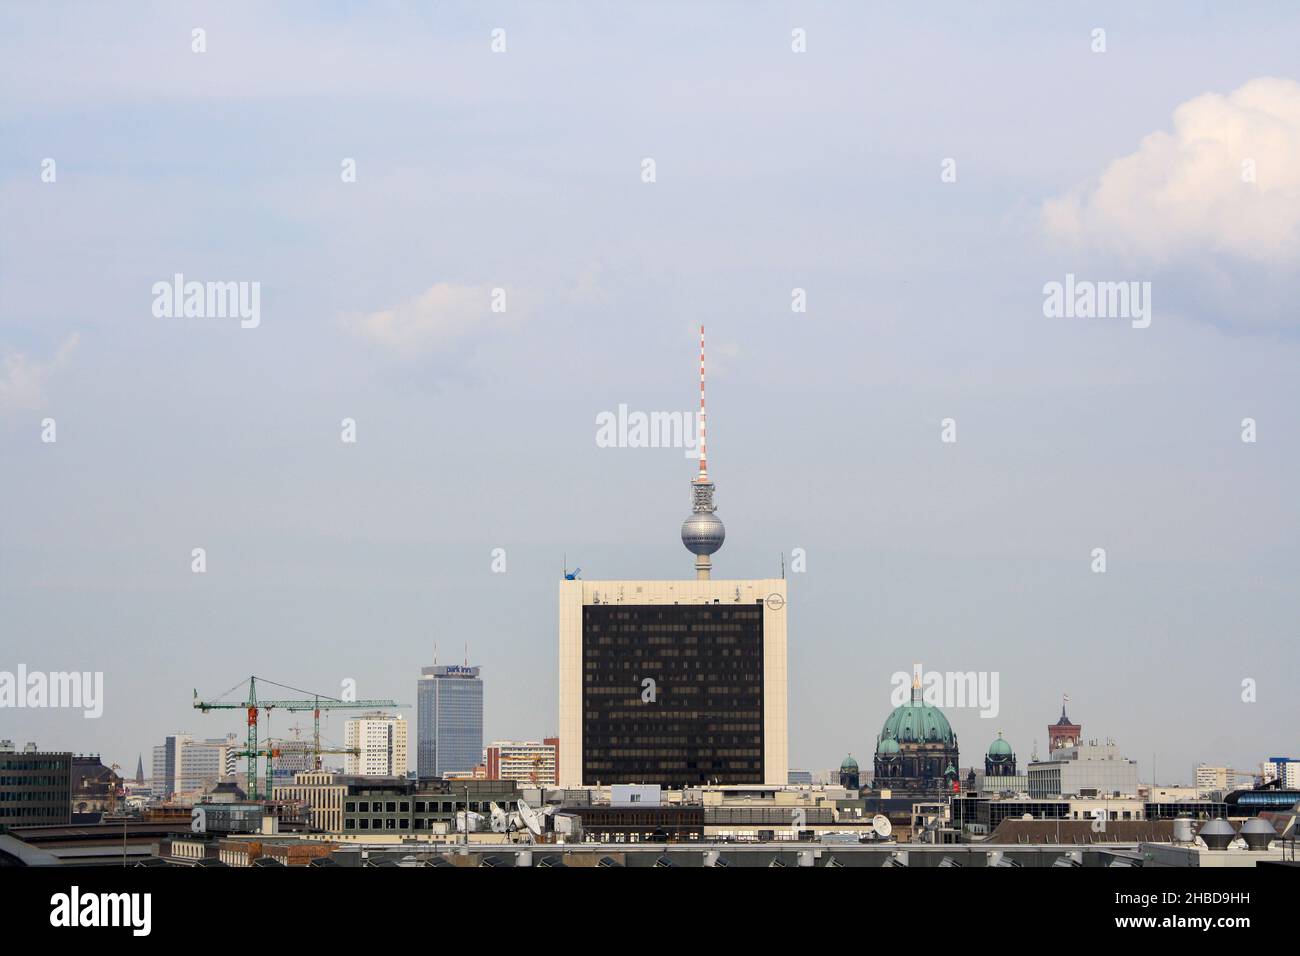 Paesaggio urbano di Berlino in estate con vista sulla famosa torre della televisione di Berlino, Berliner Dom e International Trade Centre. Sfondo cielo blu chiaro. Nessuna gente. Foto Stock